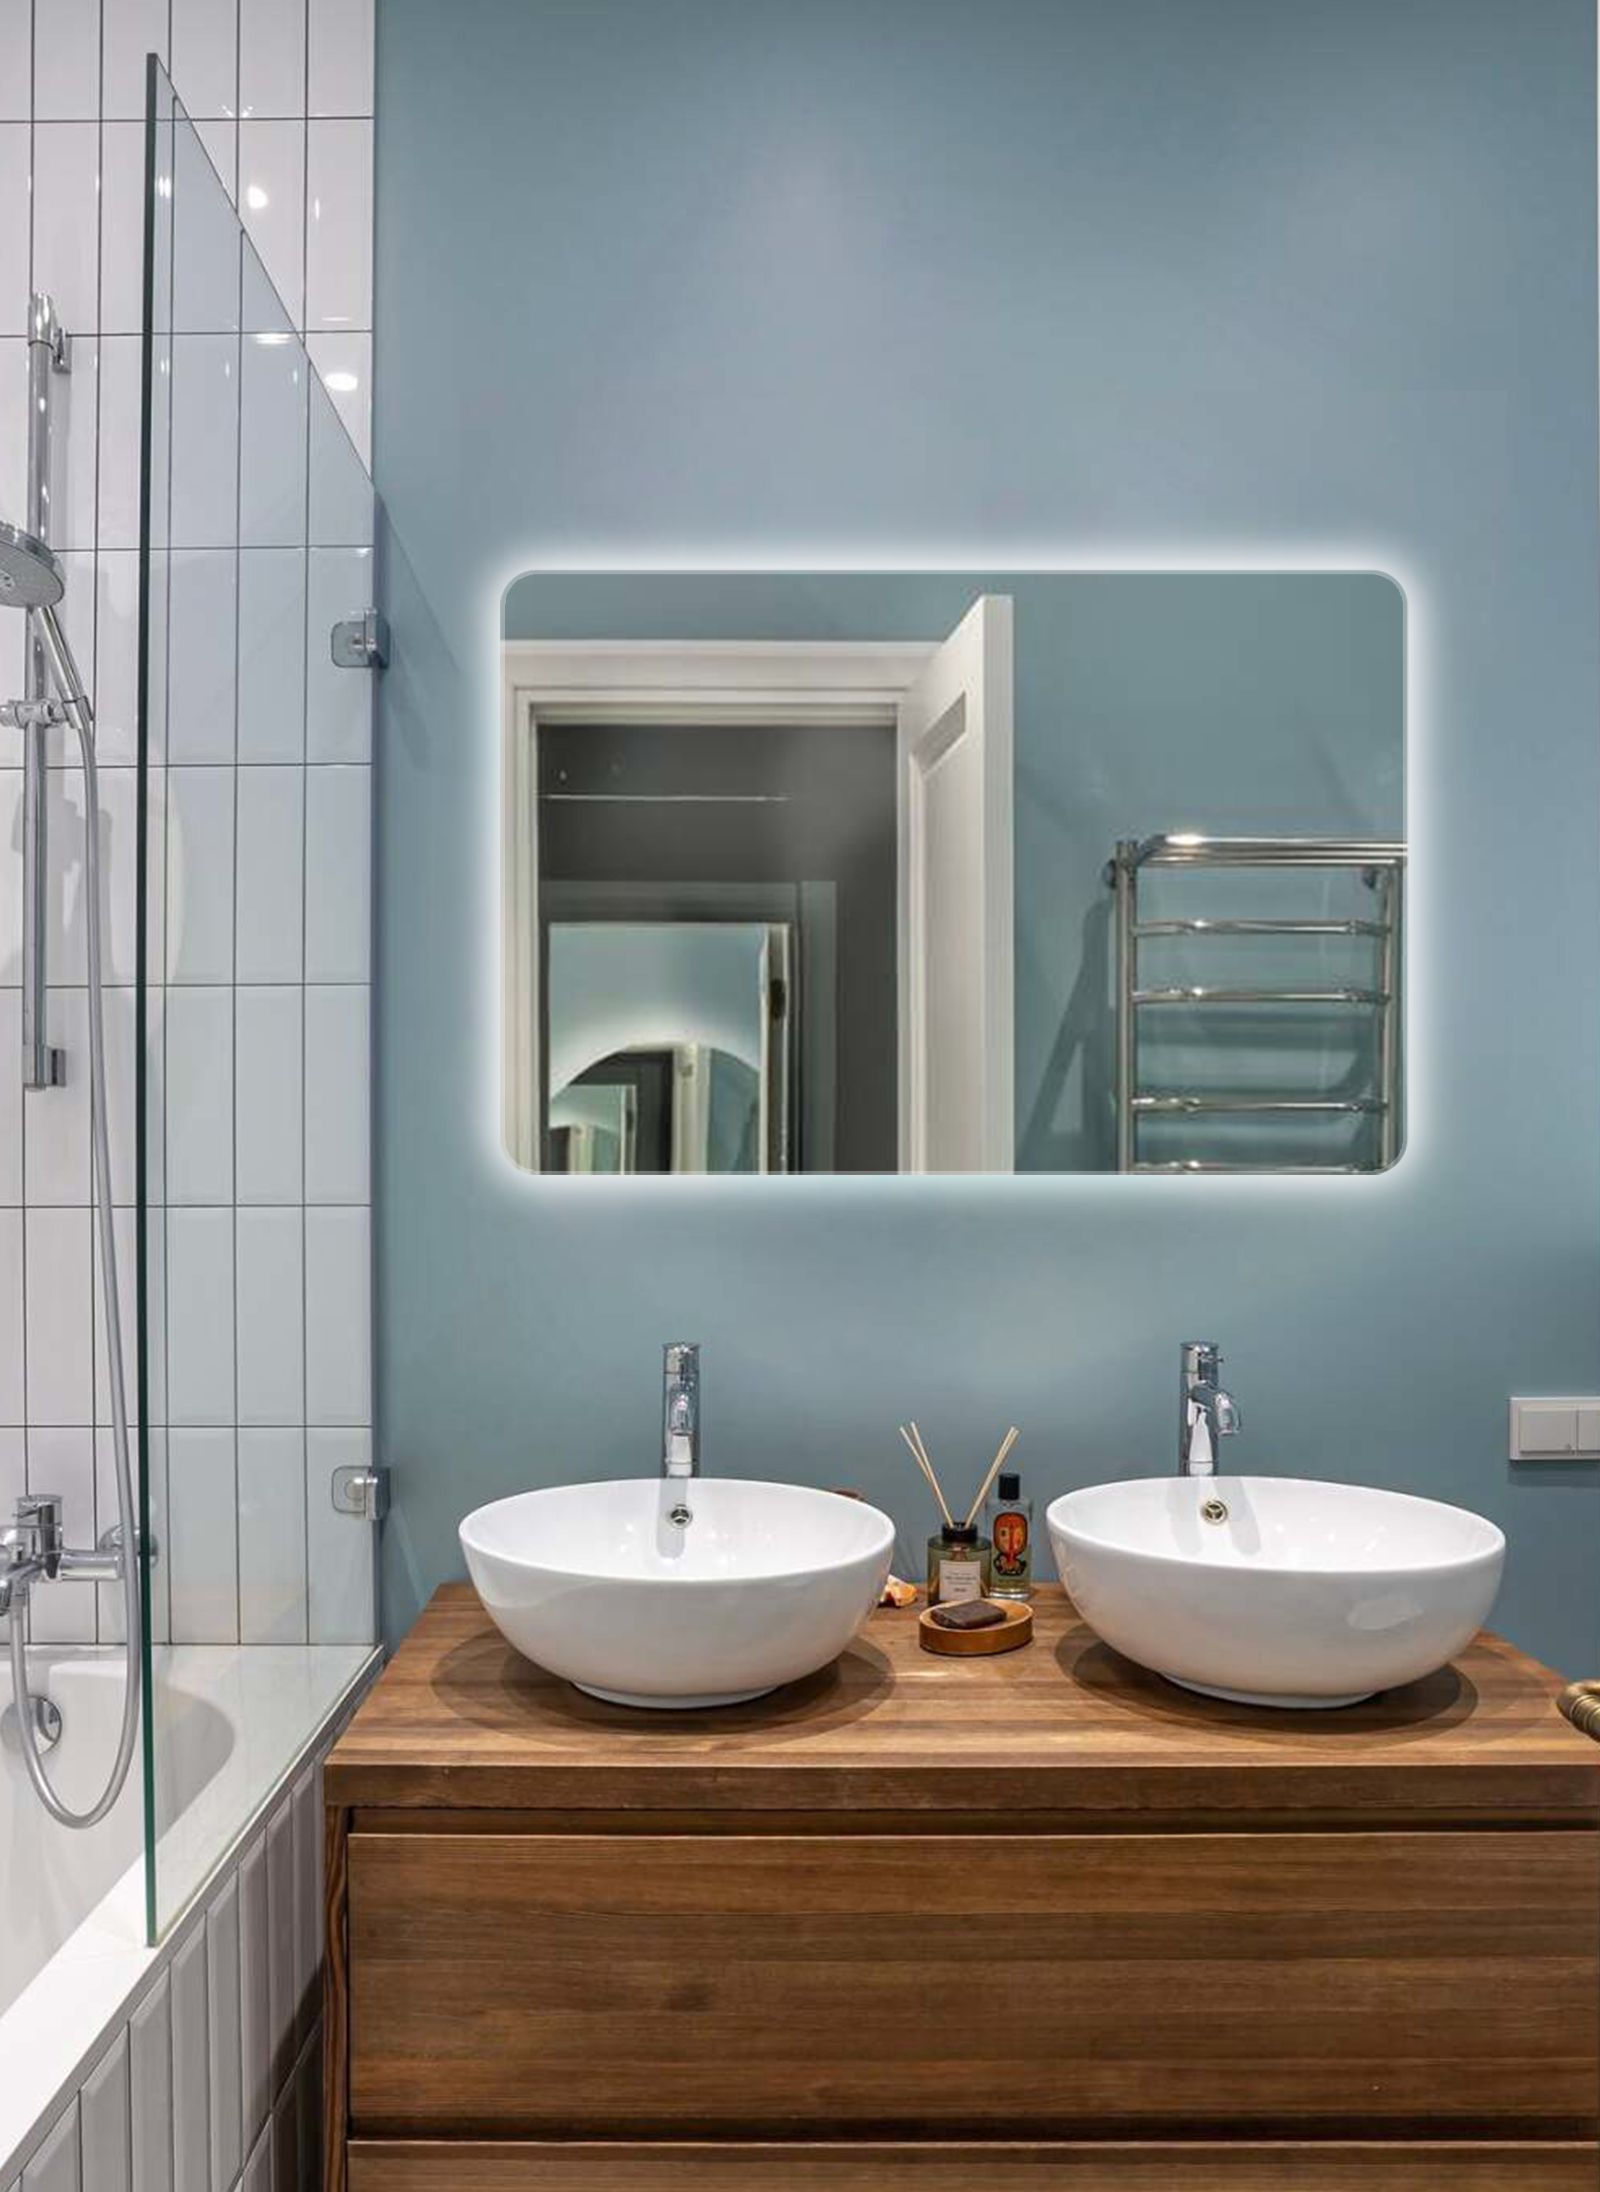 Зеркало для ванной Prisma 100*120 прямоугольное горизонтальное c подогревом